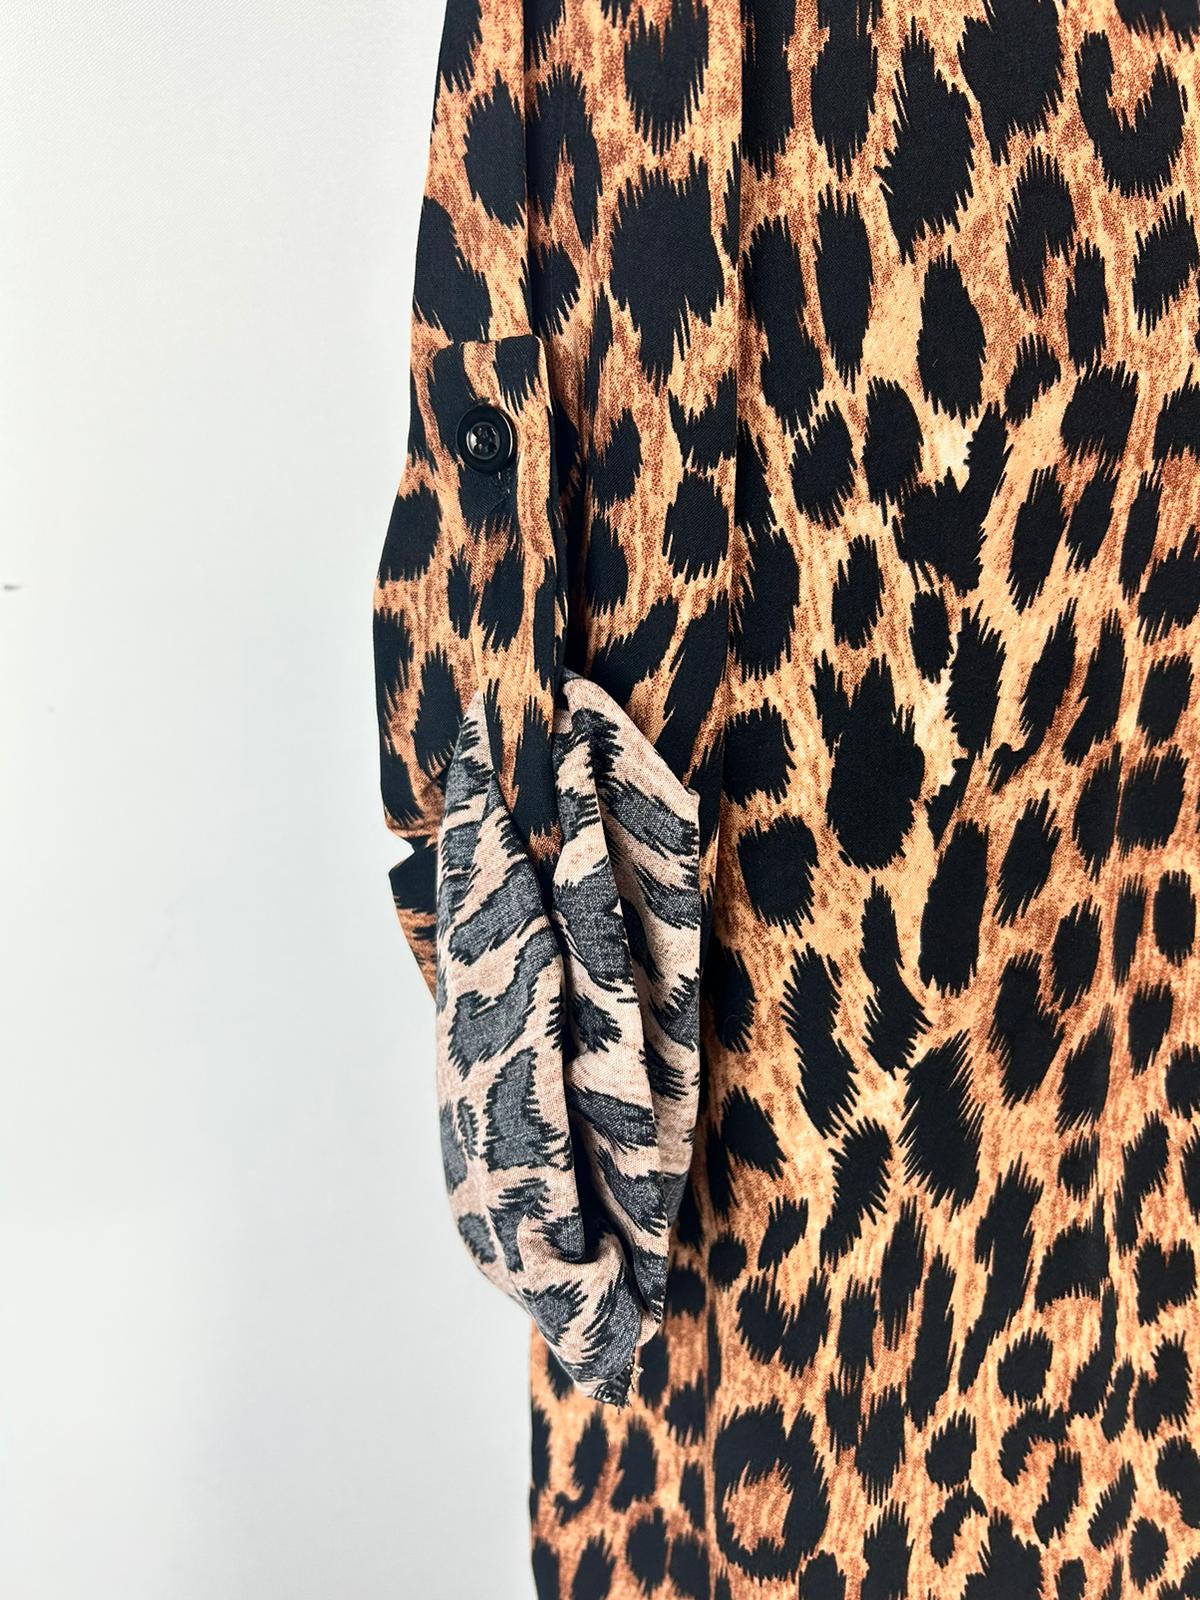 Leoparden-Bluse mit V-Ausschnitt